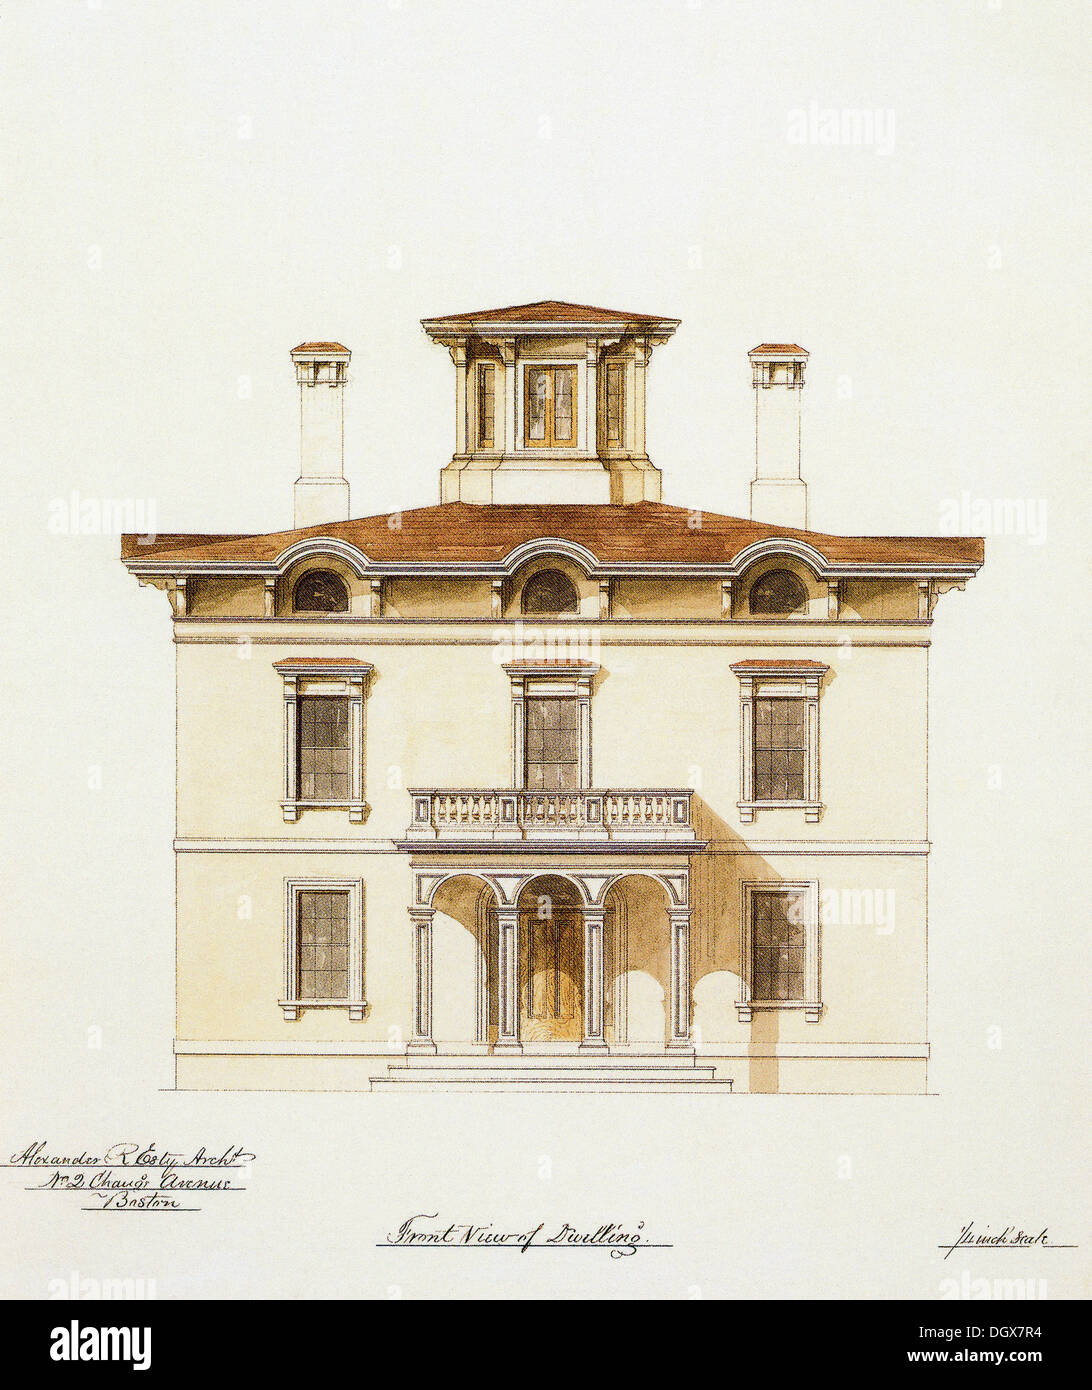 Plan de maison historique, USA, 1855 Banque D'Images